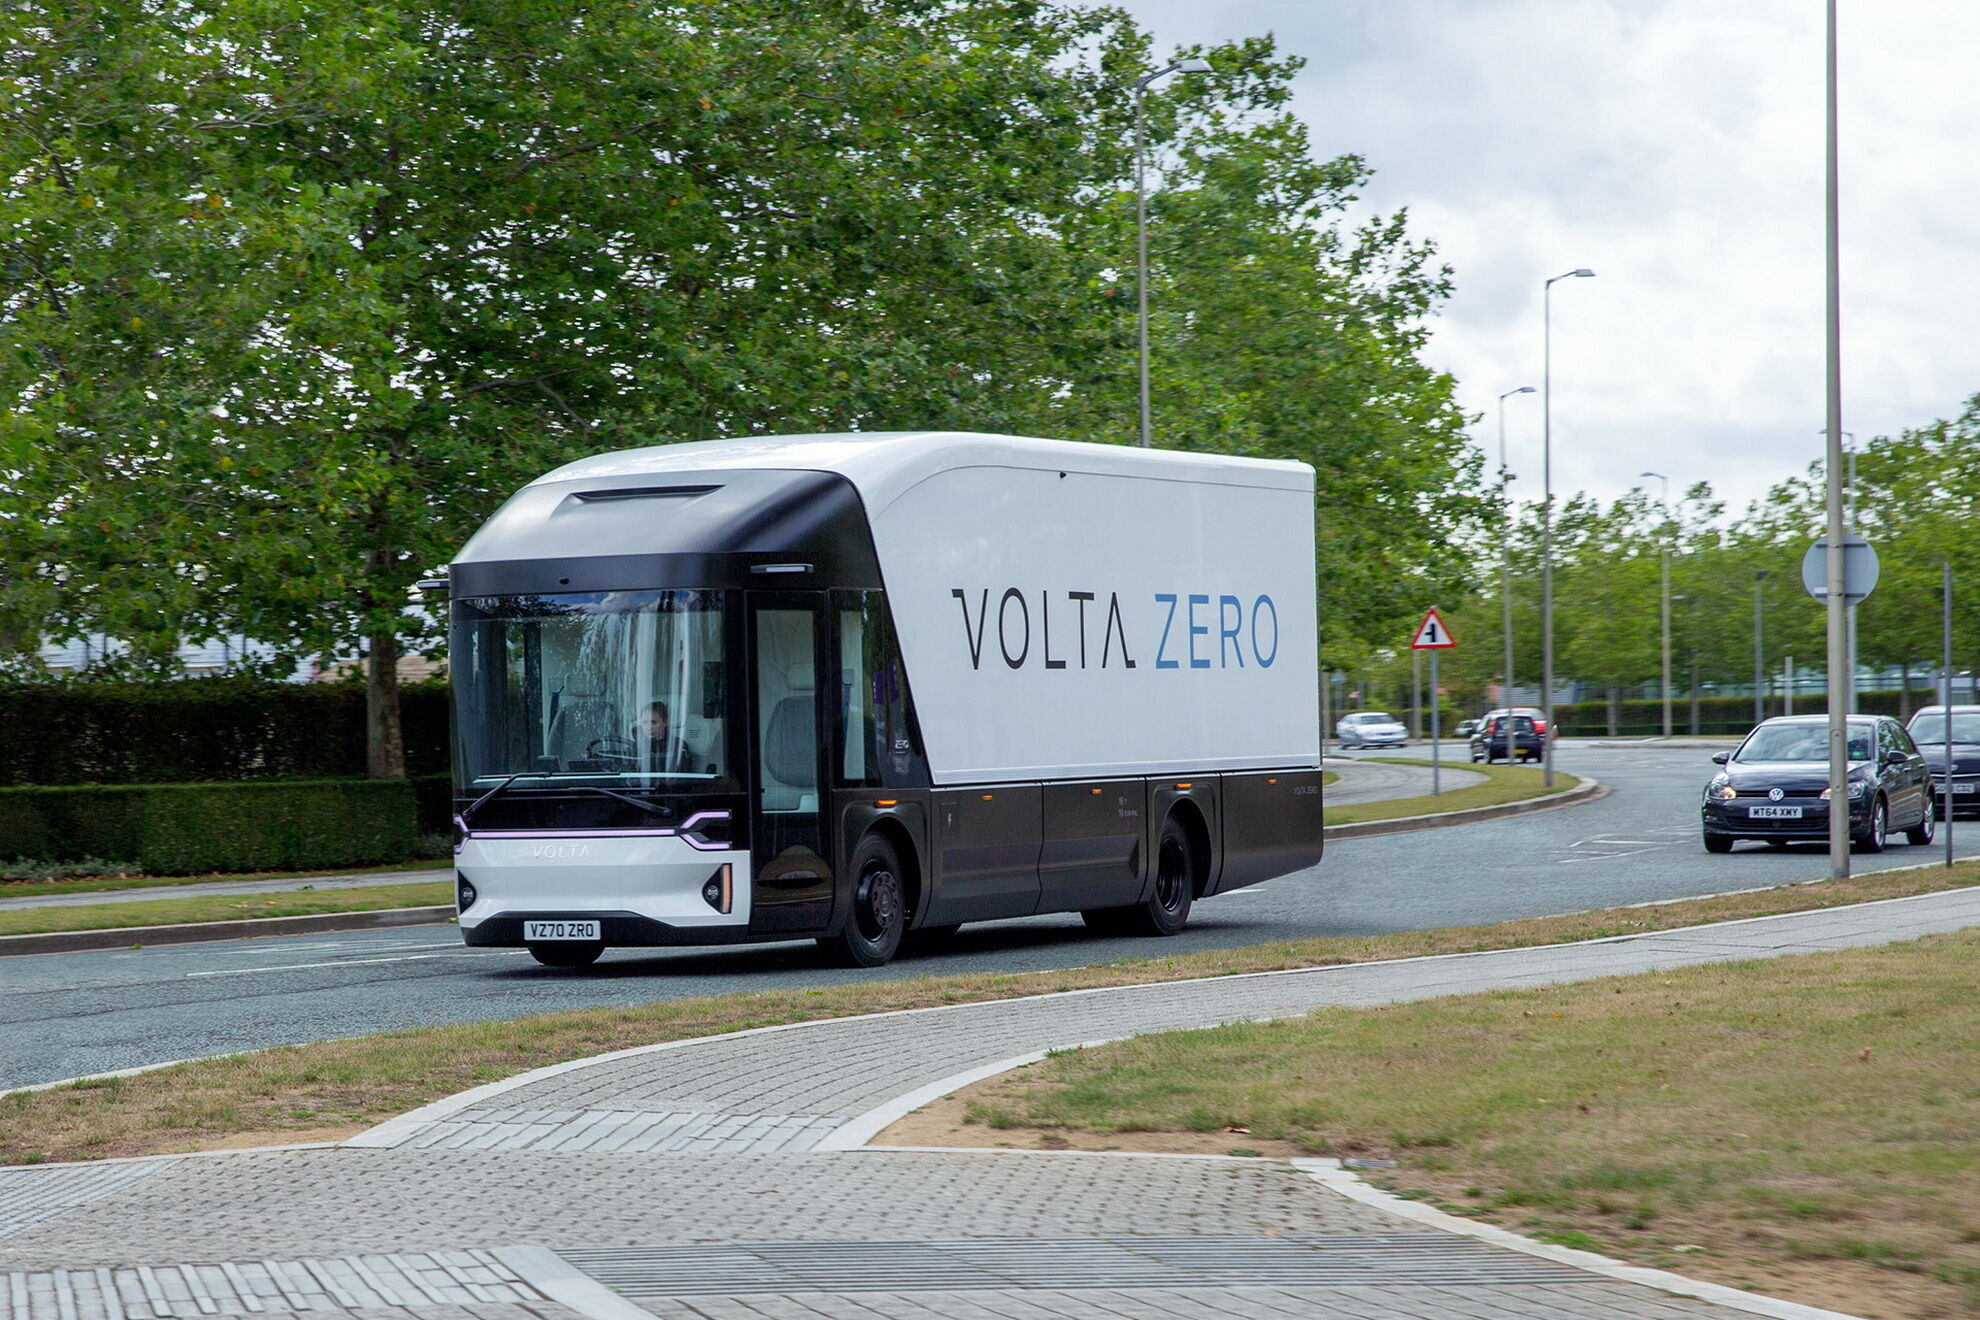 Перші прототипи Volta Zero будуть виготовлені наступного року, а серійне виробництво планується почати 2022 року